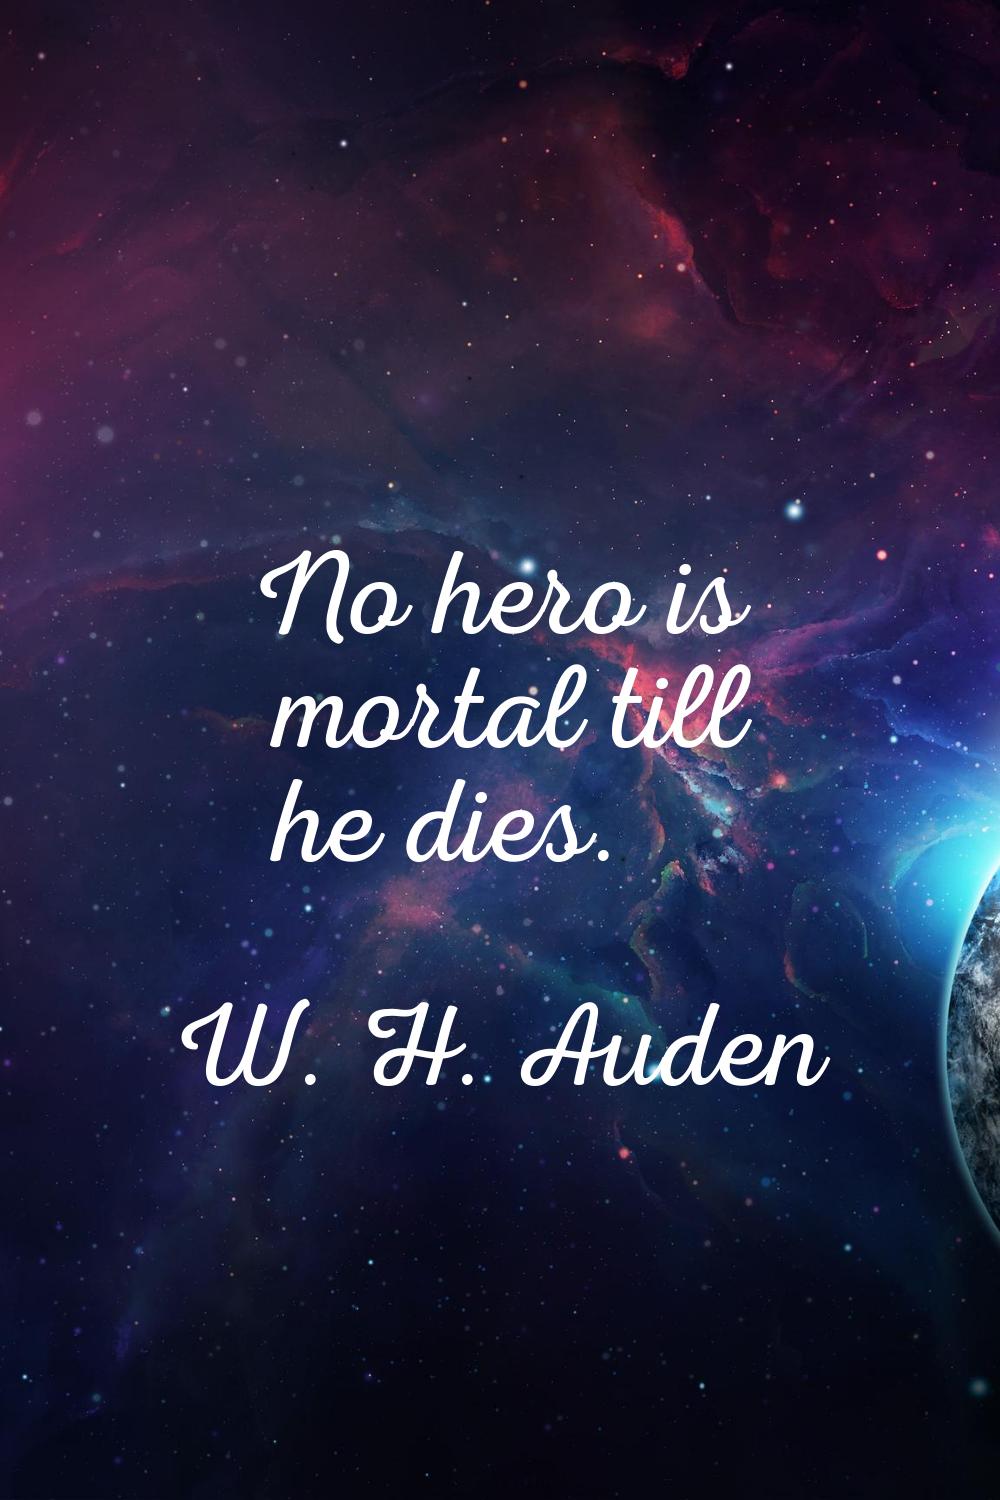 No hero is mortal till he dies.